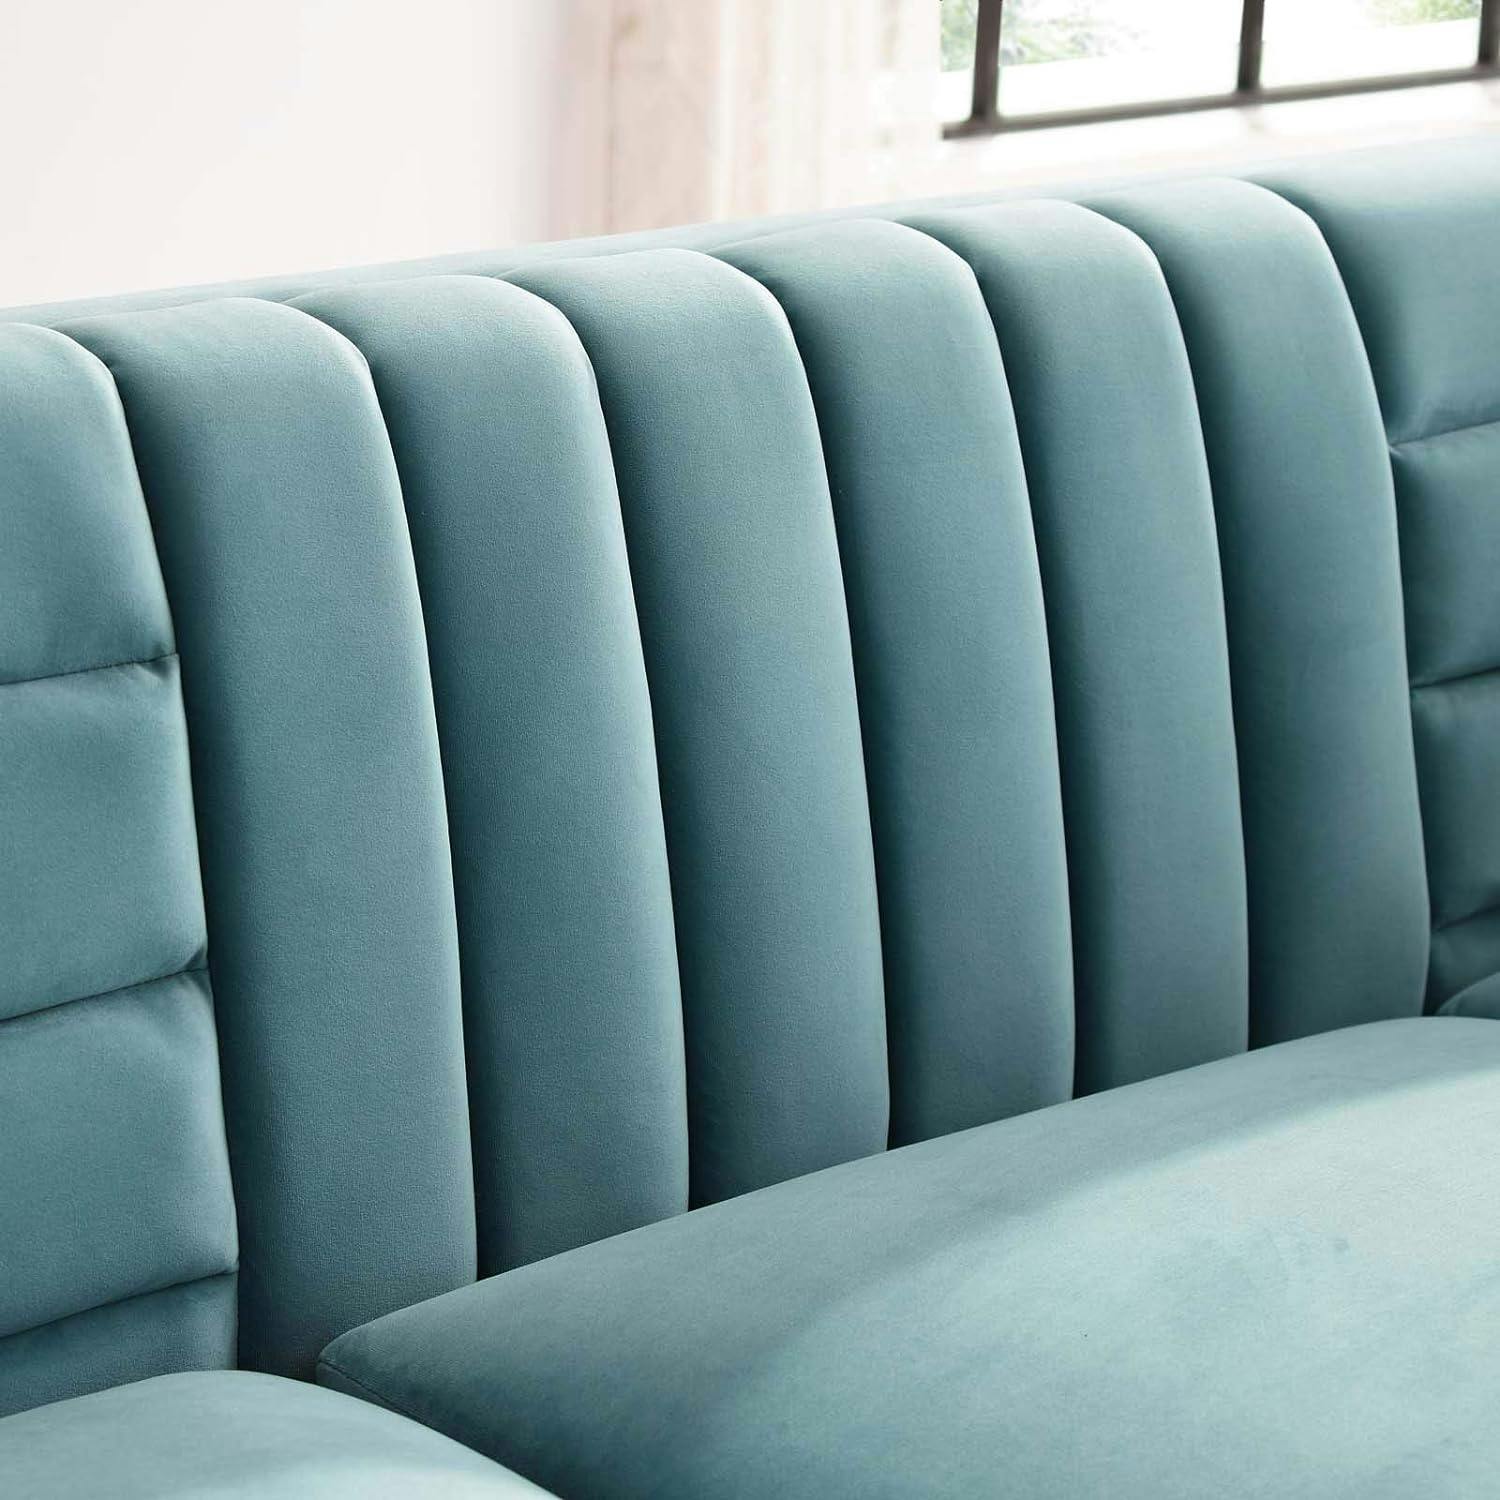 Light Blue Velvet Tufted Sofa with Gold Steel Legs